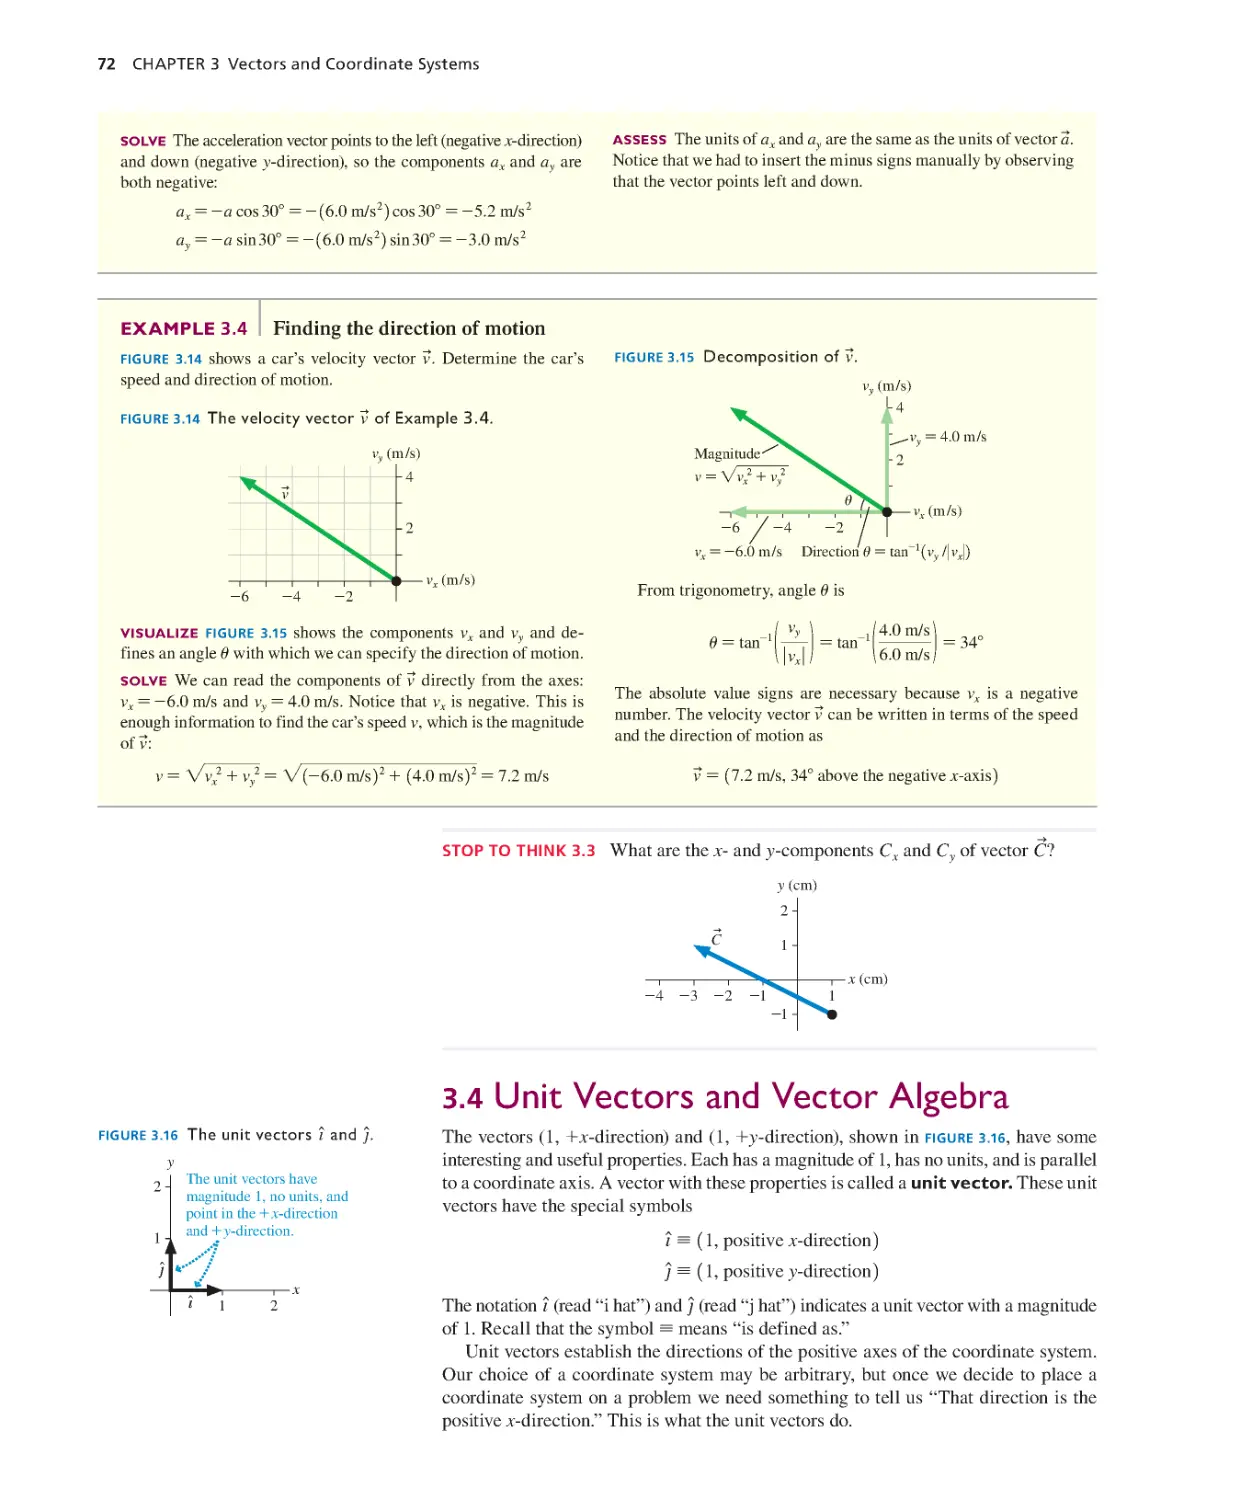 3.4. Unit Vectors and Vector Algebra